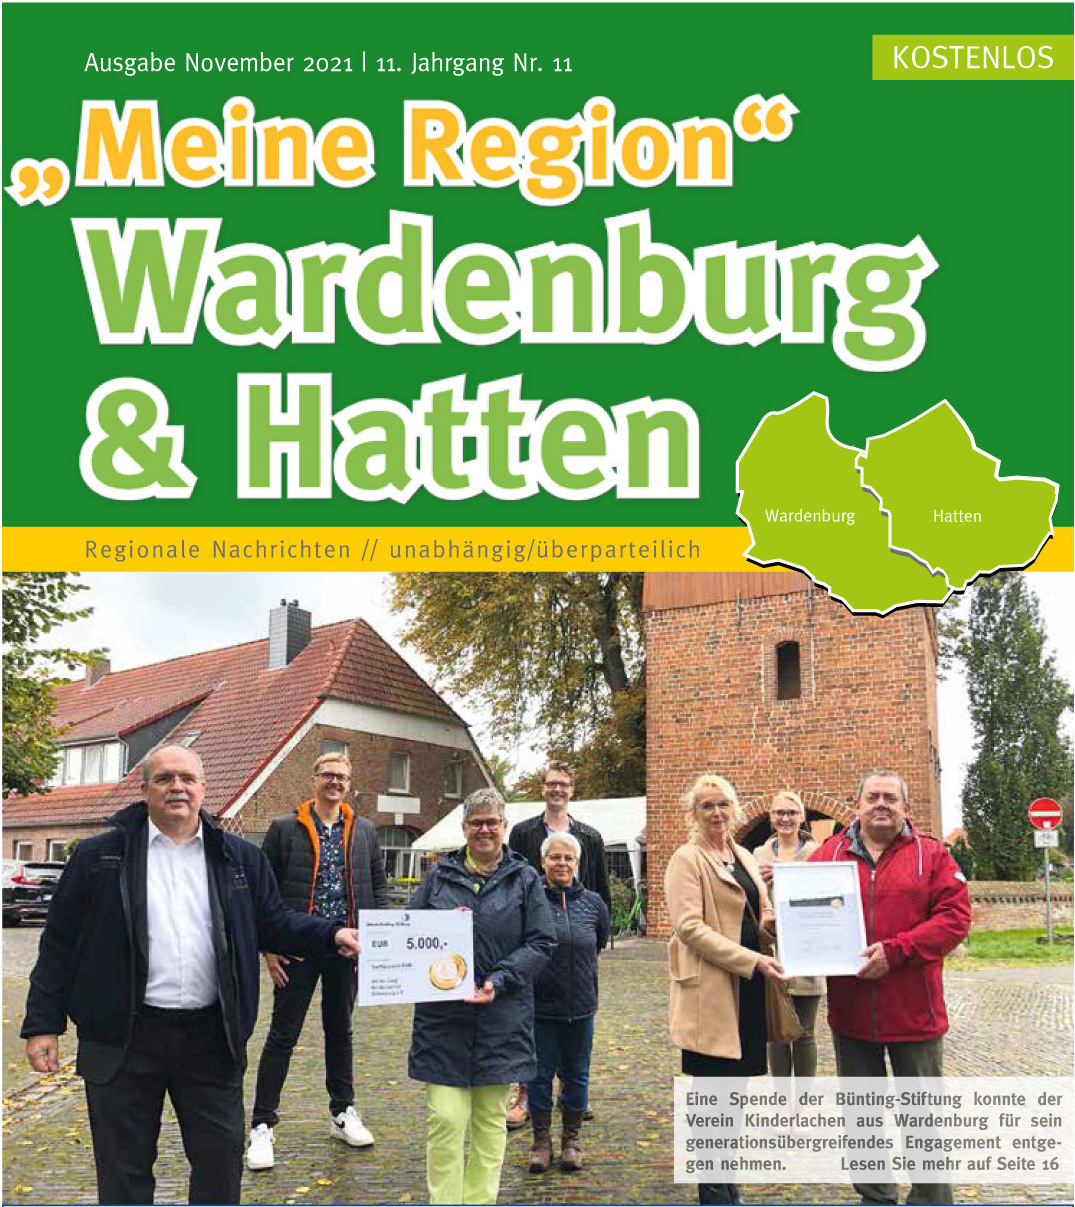 Meine Region Wardenburg & Hatten Titelseite Ausgabe November 2021 - hier die Zeitung für Hatten und Wardenburg kostenlos als PDF lesen ...